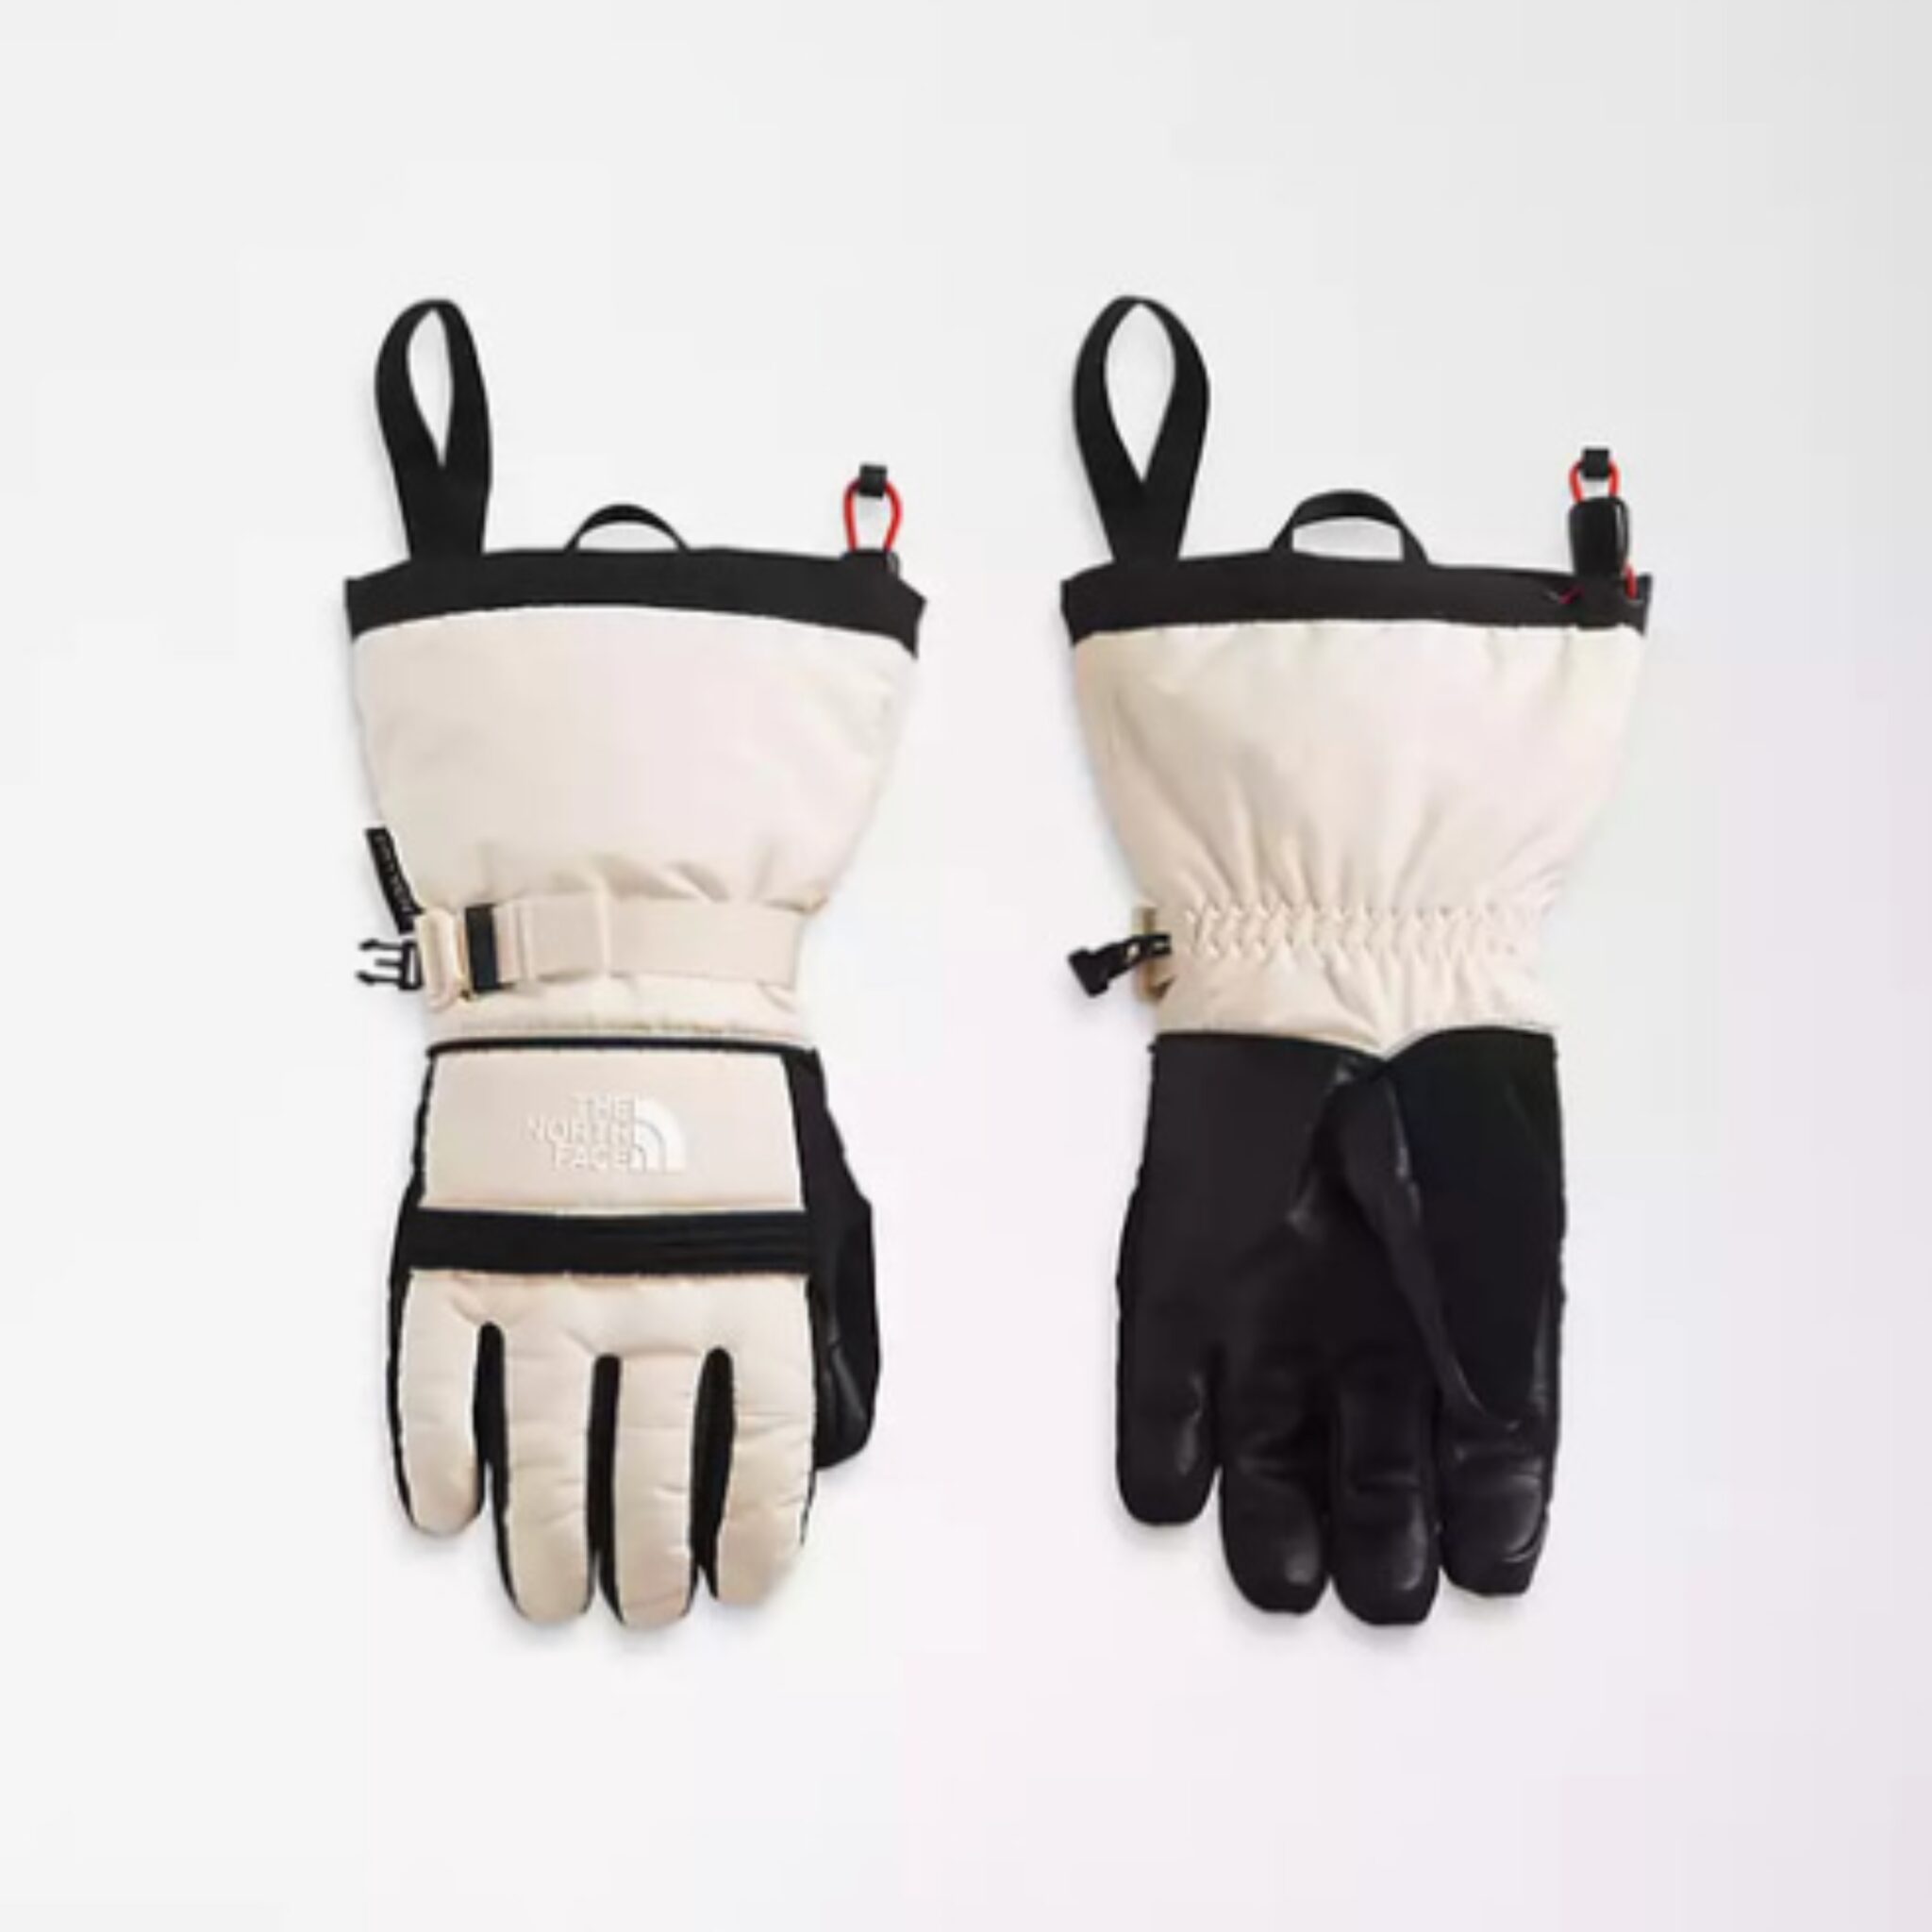 Best ski gloves for women